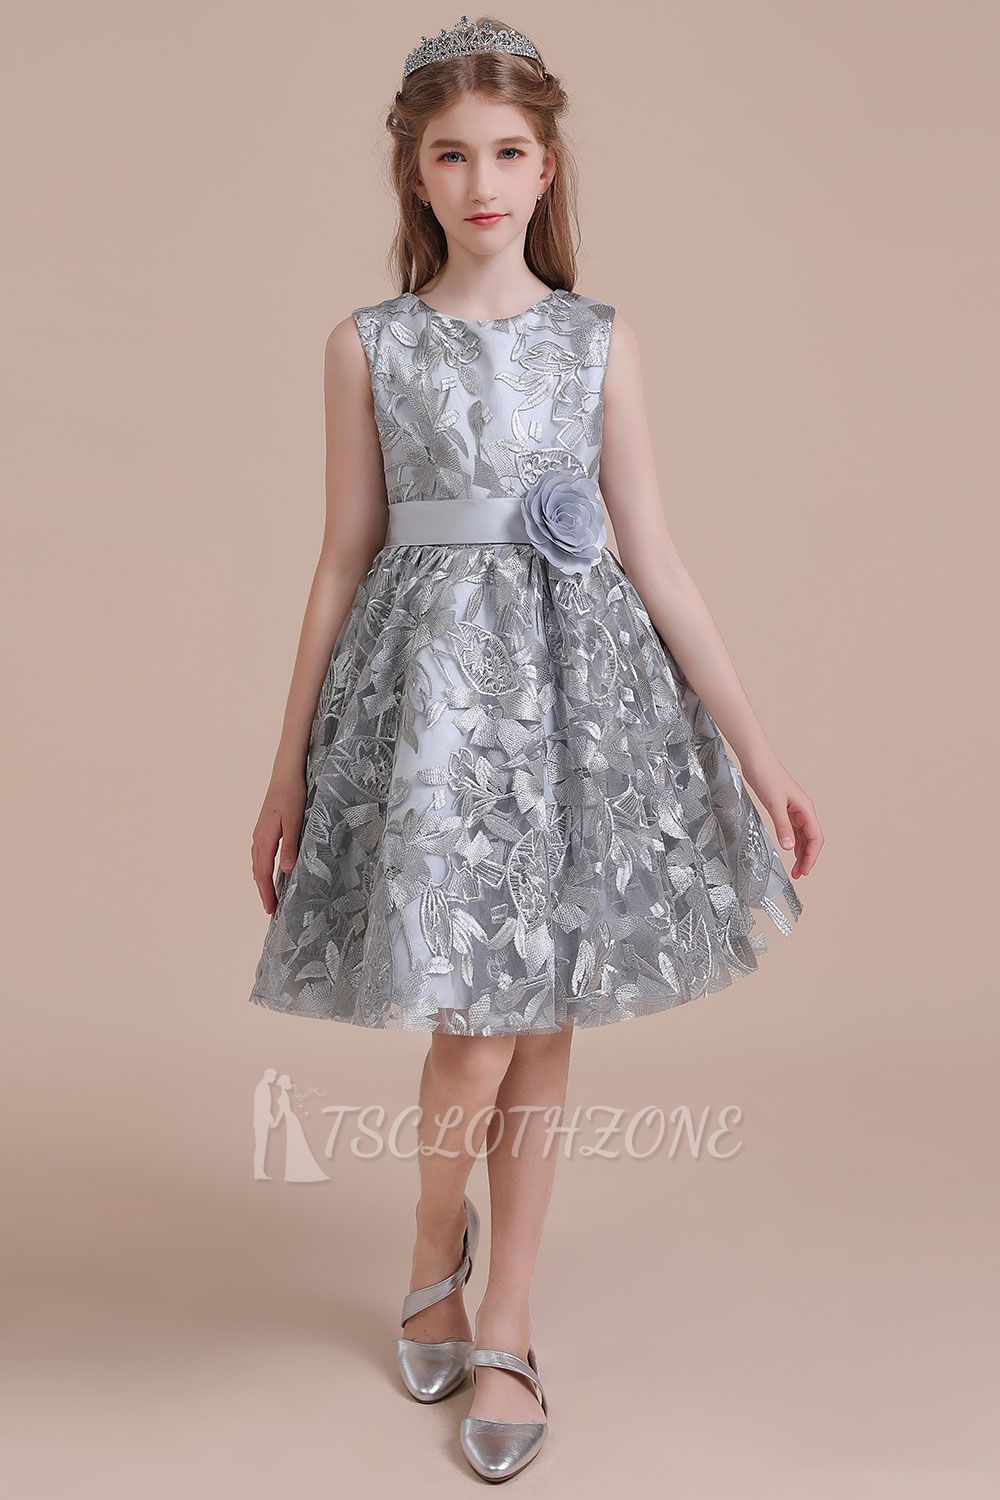 Spring A-line Tulle Flower Girl Dress | Bow Sleeveless Little Girls Pegeant Dress Online